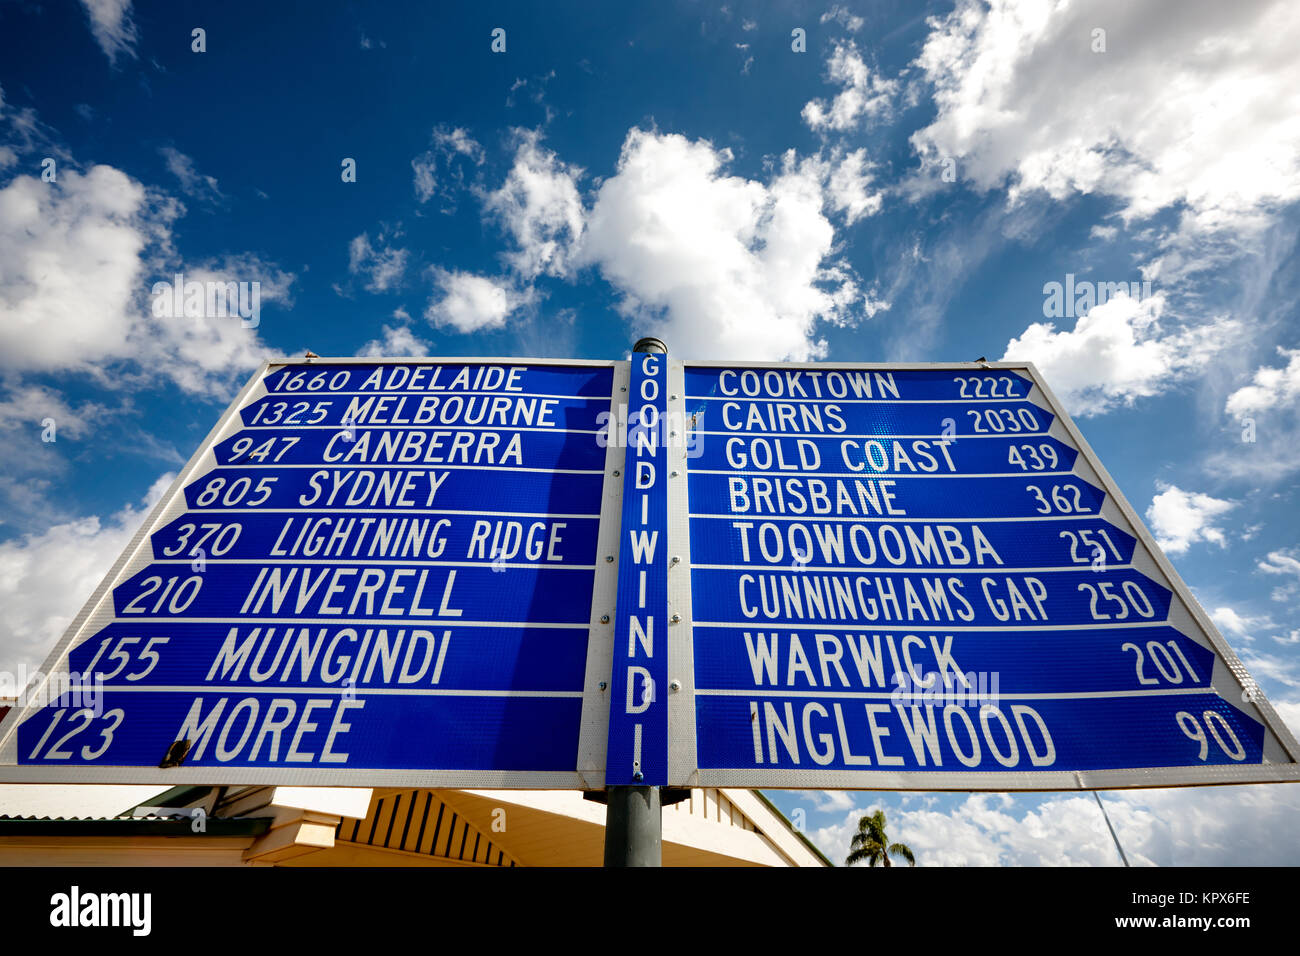 Große touristische signin Goondiwindi, Queensland. Zeigen Sie Entfernungen von Goondiwindi zu anderen Destinationen. Stockfoto